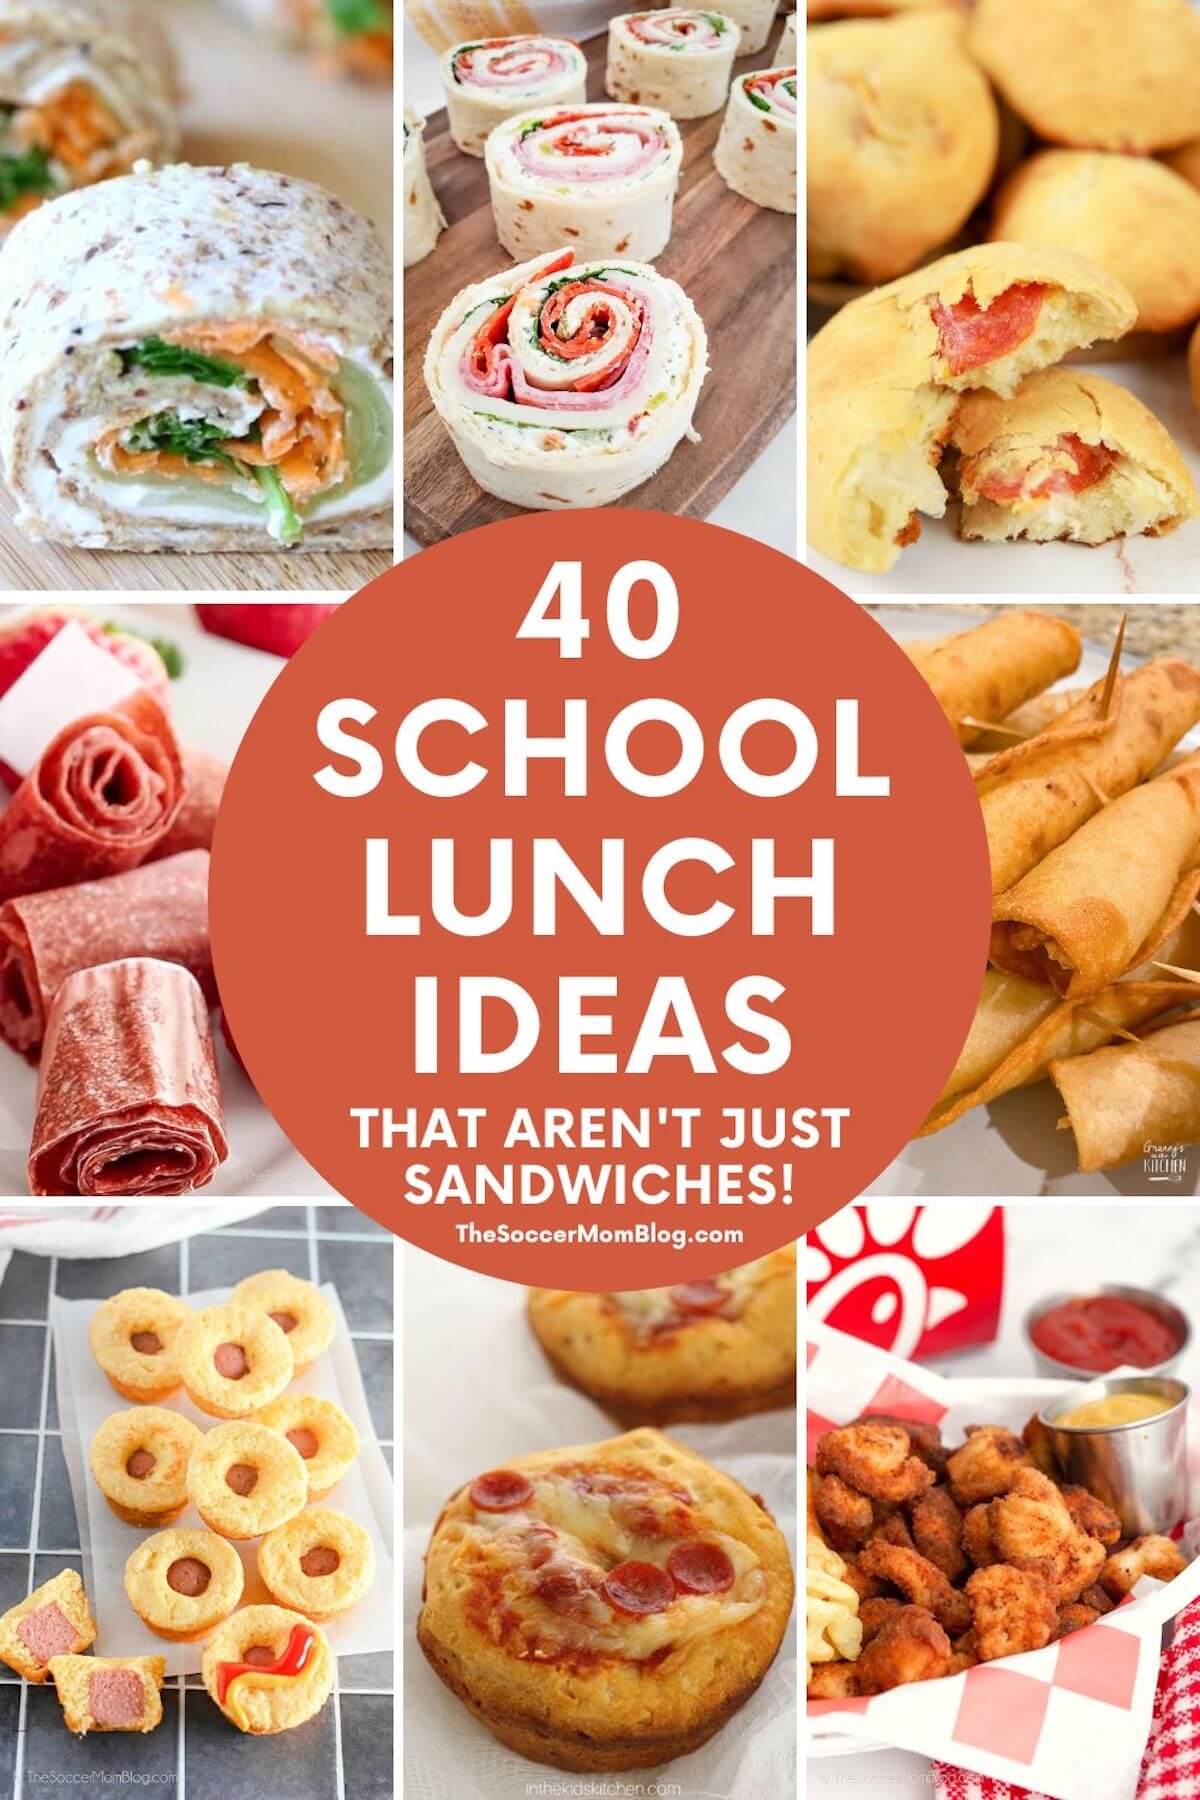 Nut-Free School Lunch Ideas + Veggie-Loaded Pizza Rolls - The